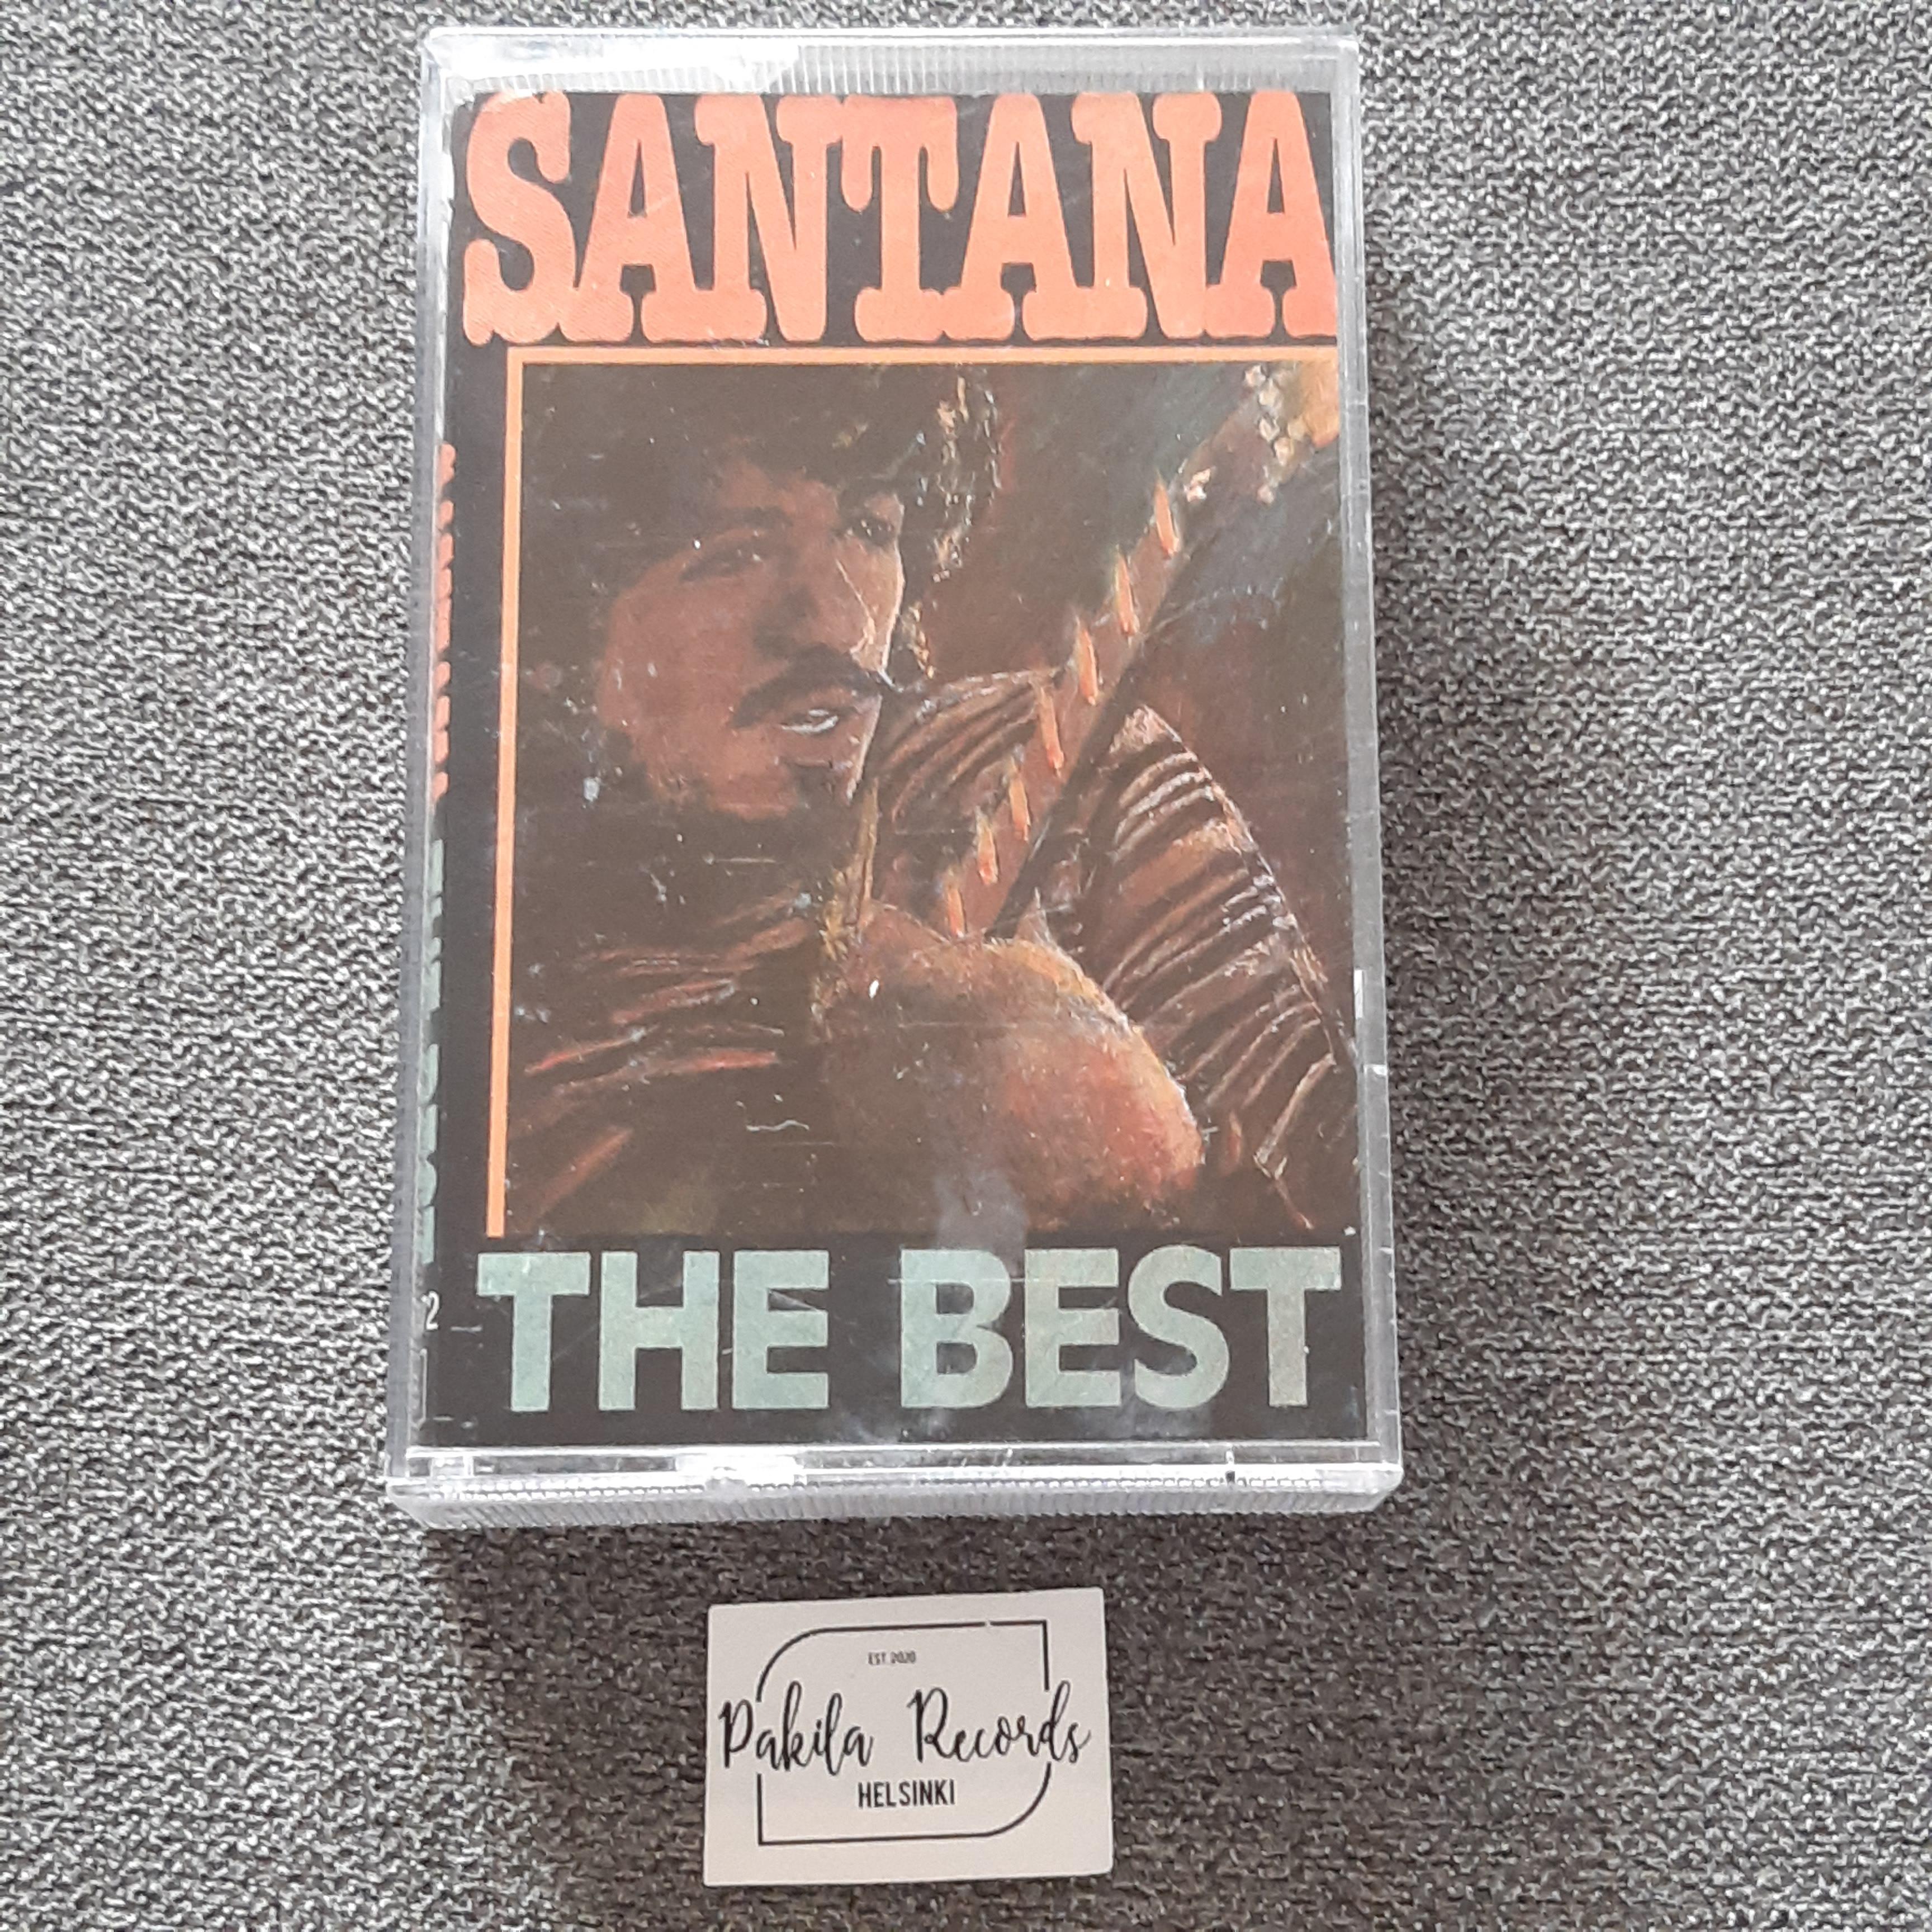 Santana - The Best - Kasetti (käytetty)